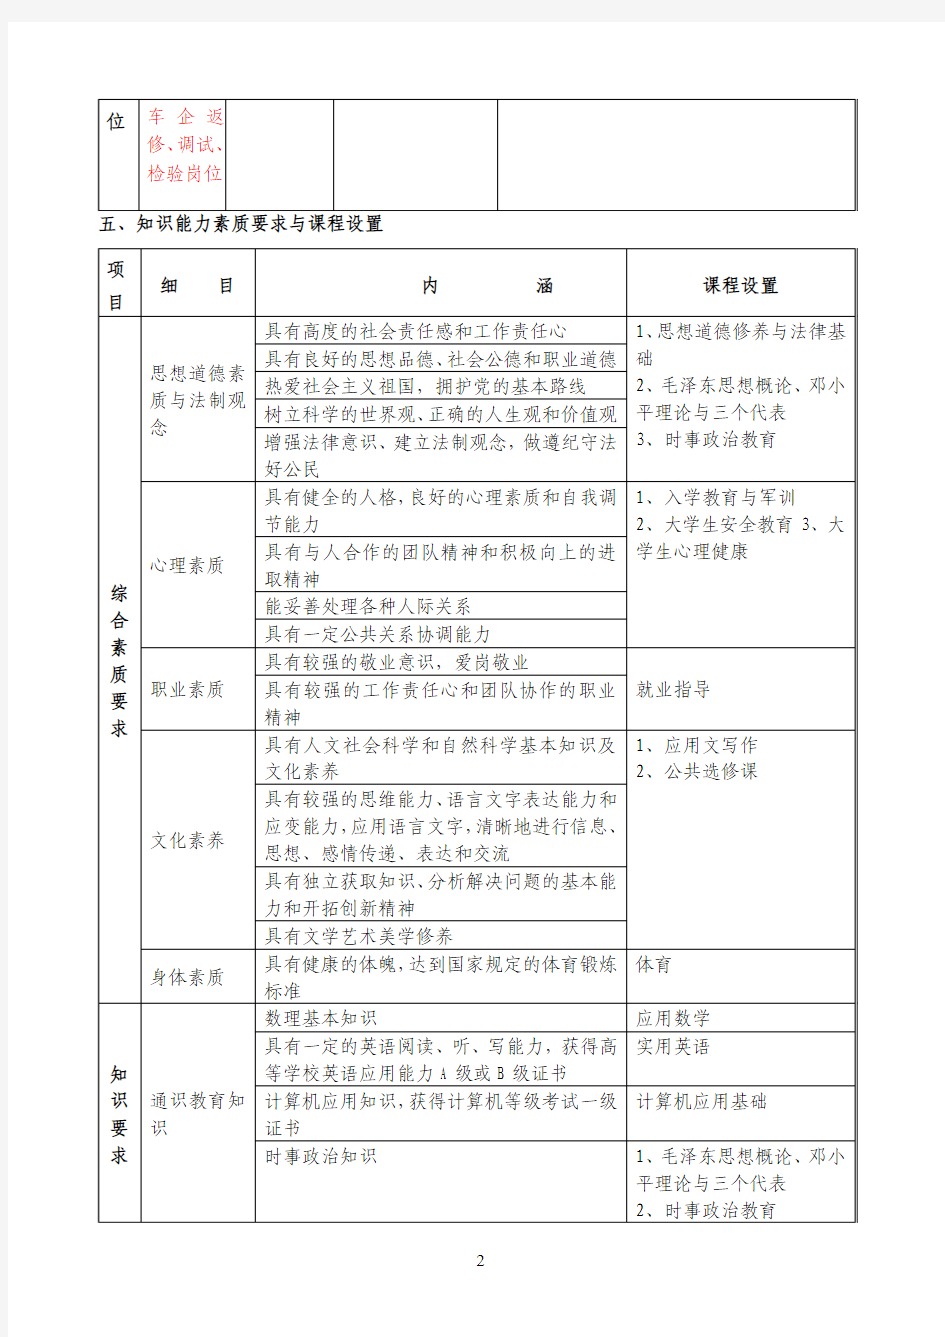 重庆电讯职业学院汽车检测与维修技术专业人才培养方案1121